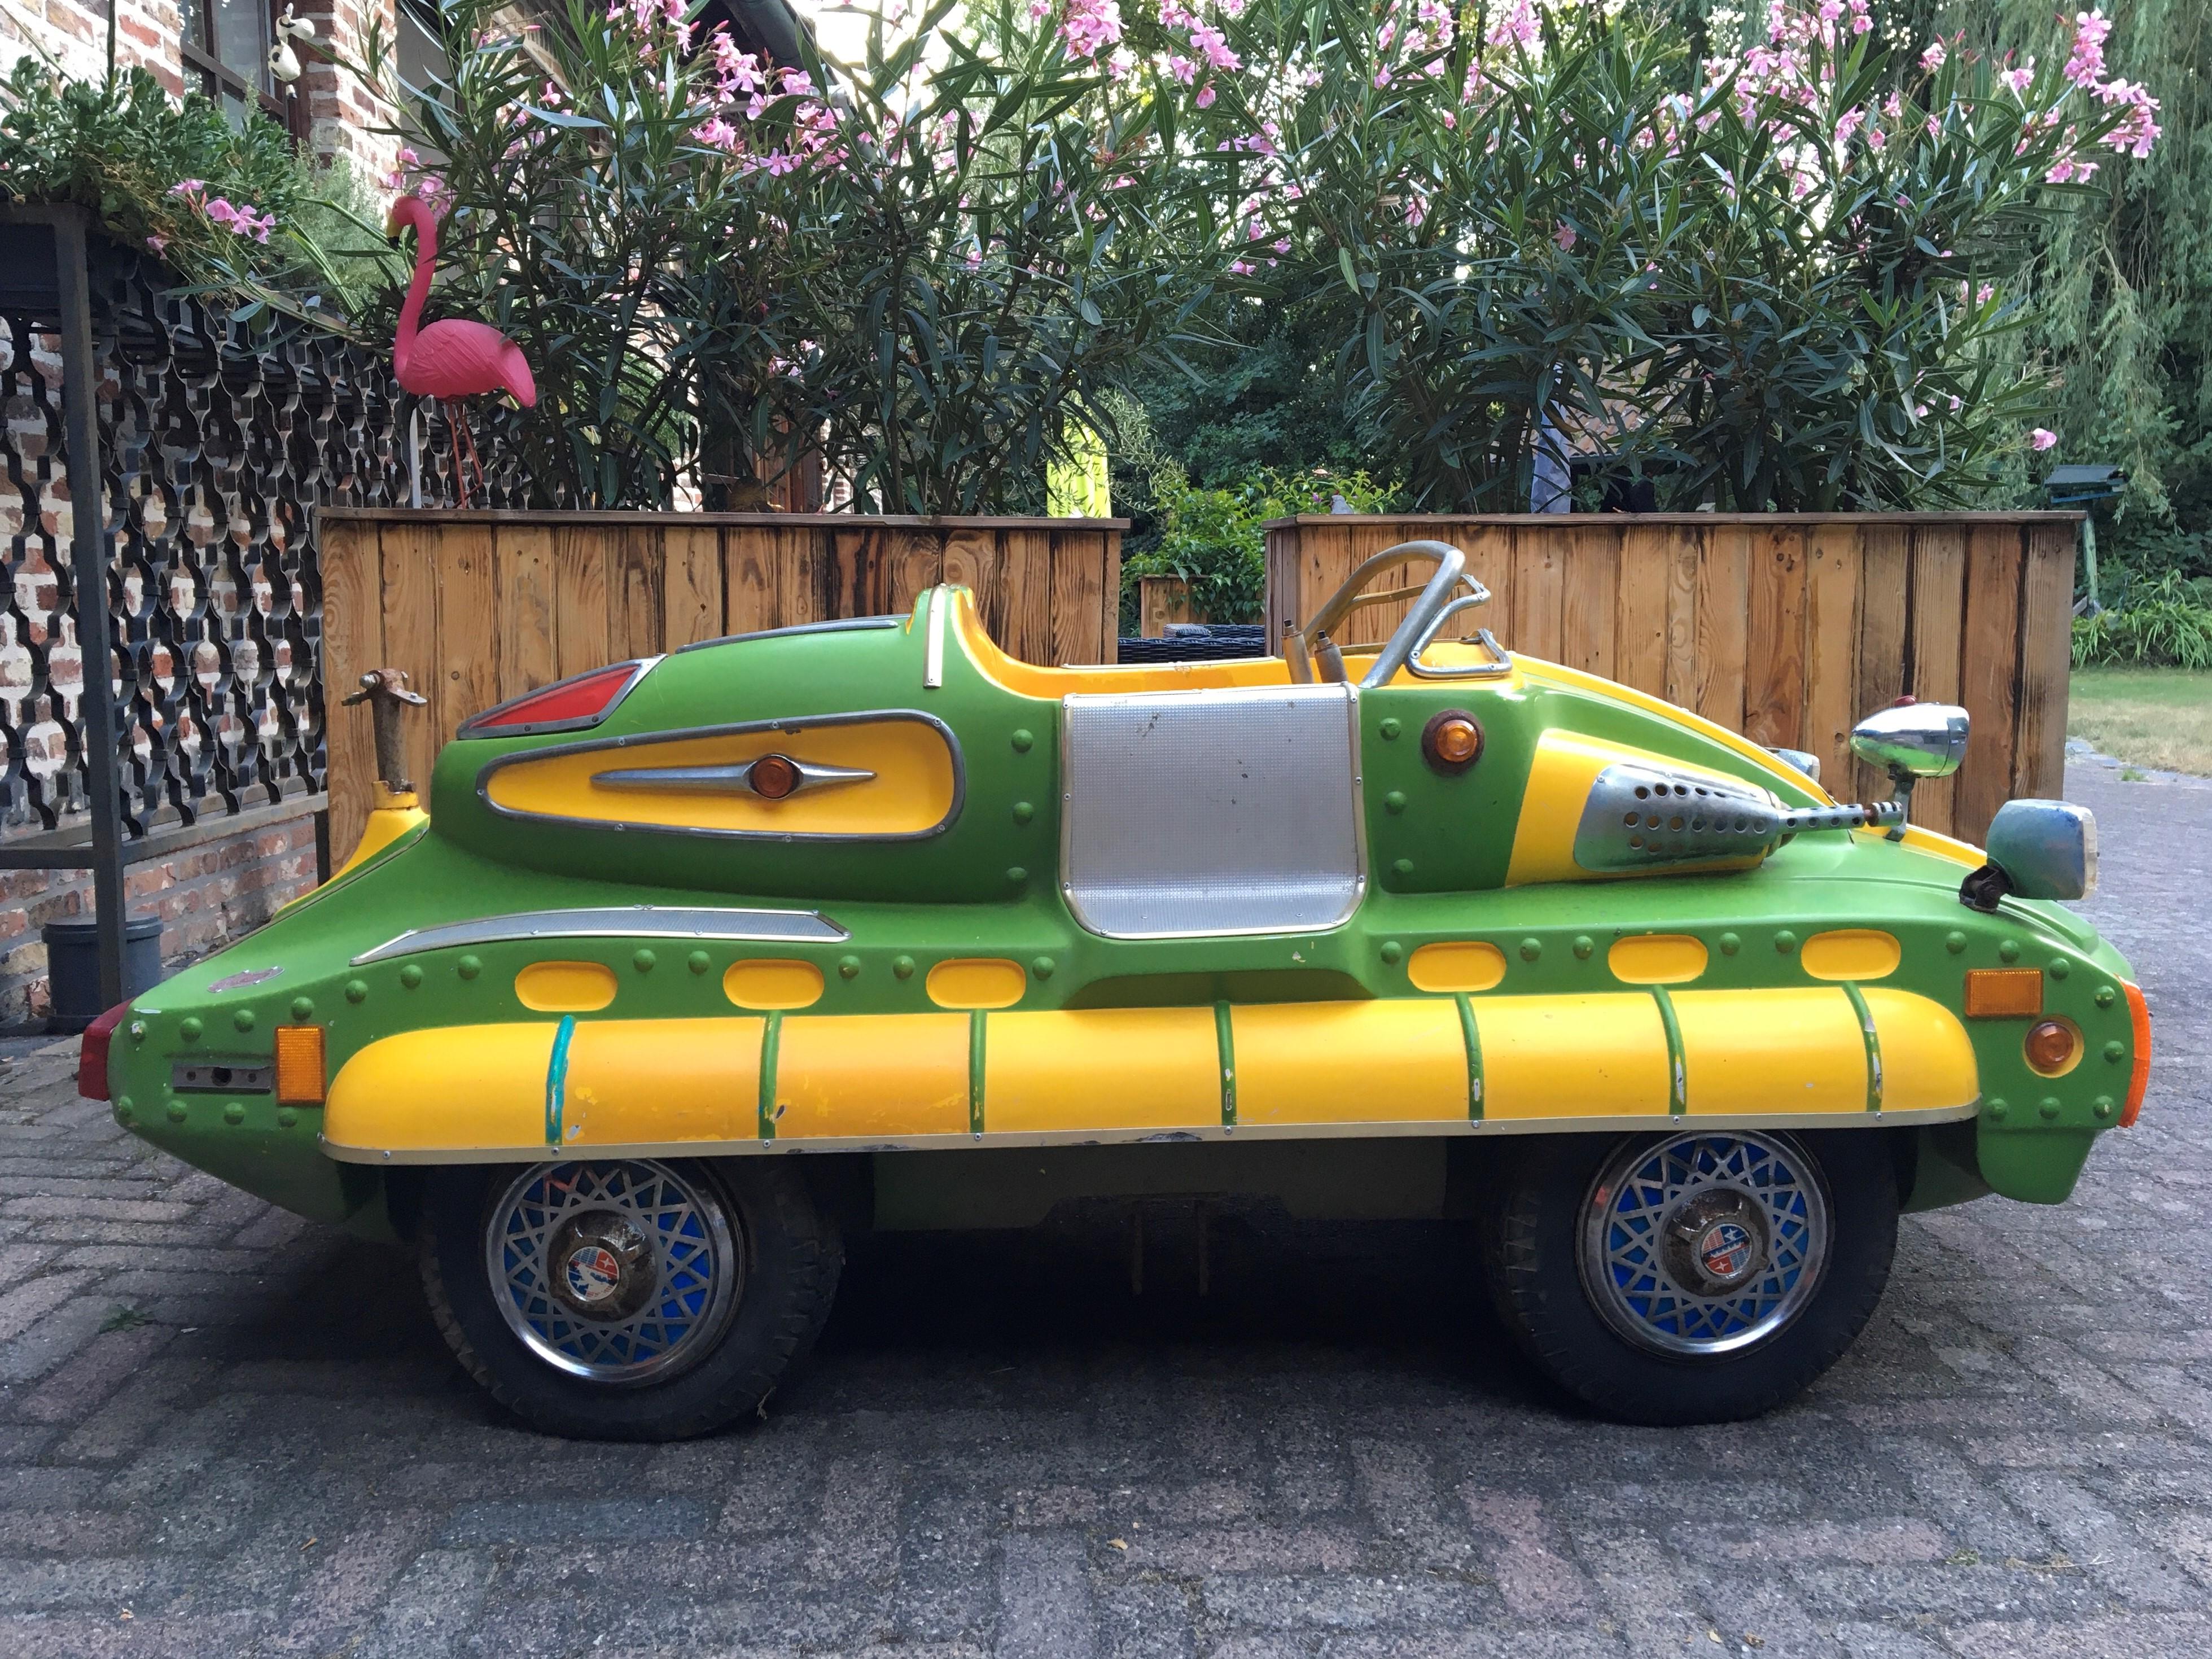 Weltraumzeitalter Kirmeswagen - futuristischer Karussellwagen von Sartori Claudio Italien, 
ein italienisches Unternehmen, das seit Anfang der 50er Jahre auf Kinderautos und andere große Attraktionen für die Vergnügungsindustrie spezialisiert ist.